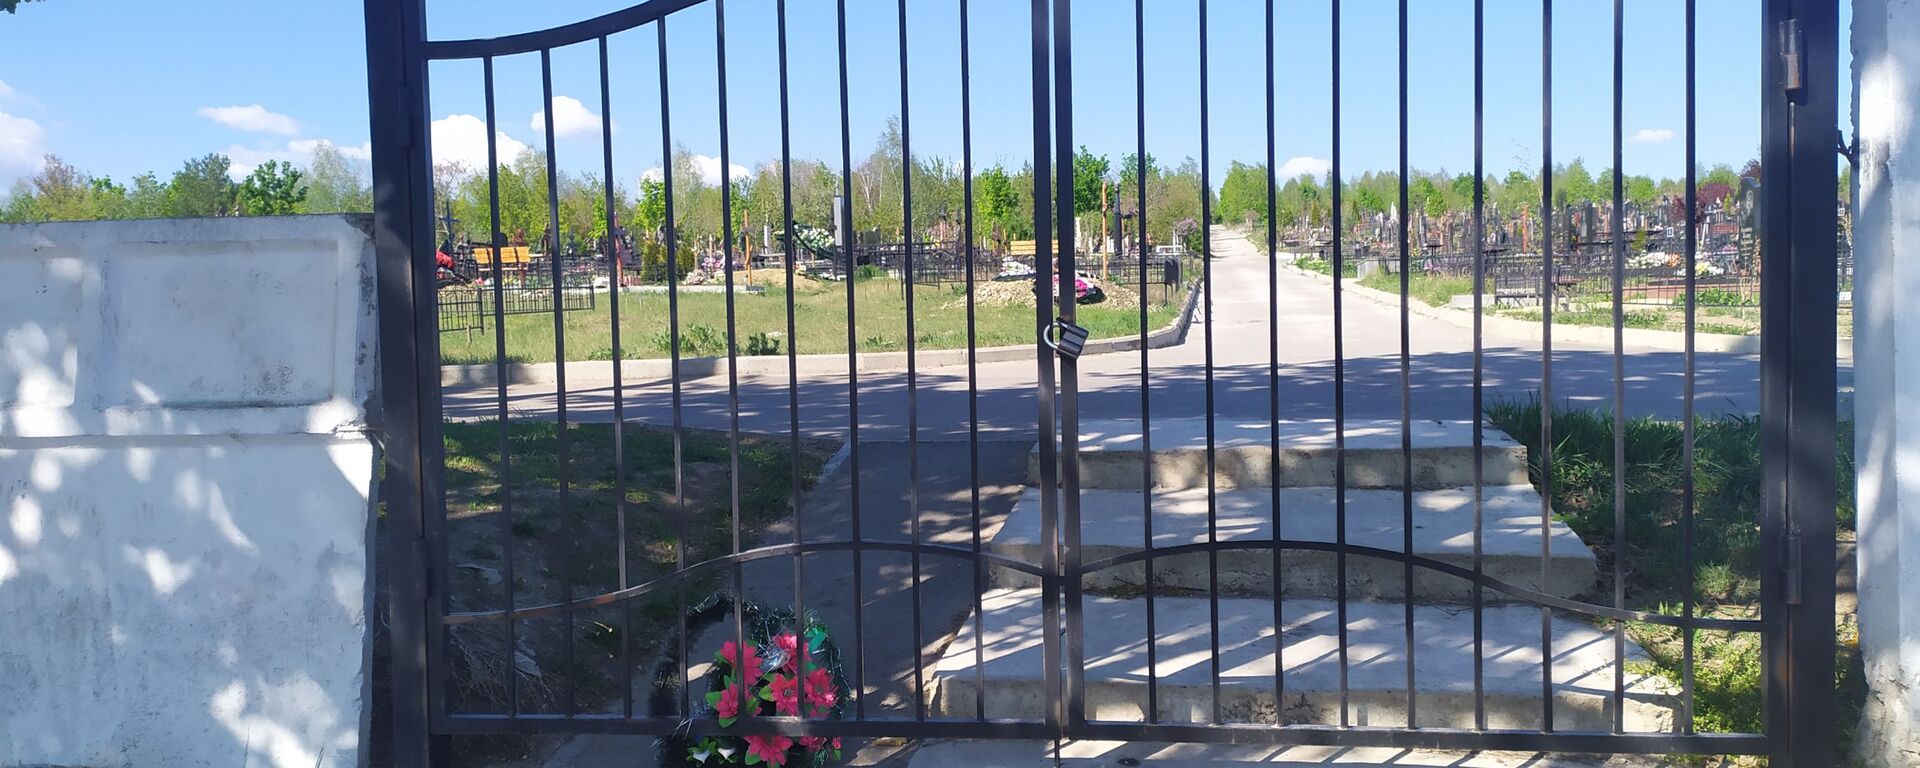 Cimitirul Doina - Sputnik Молдова, 1920, 08.05.2021